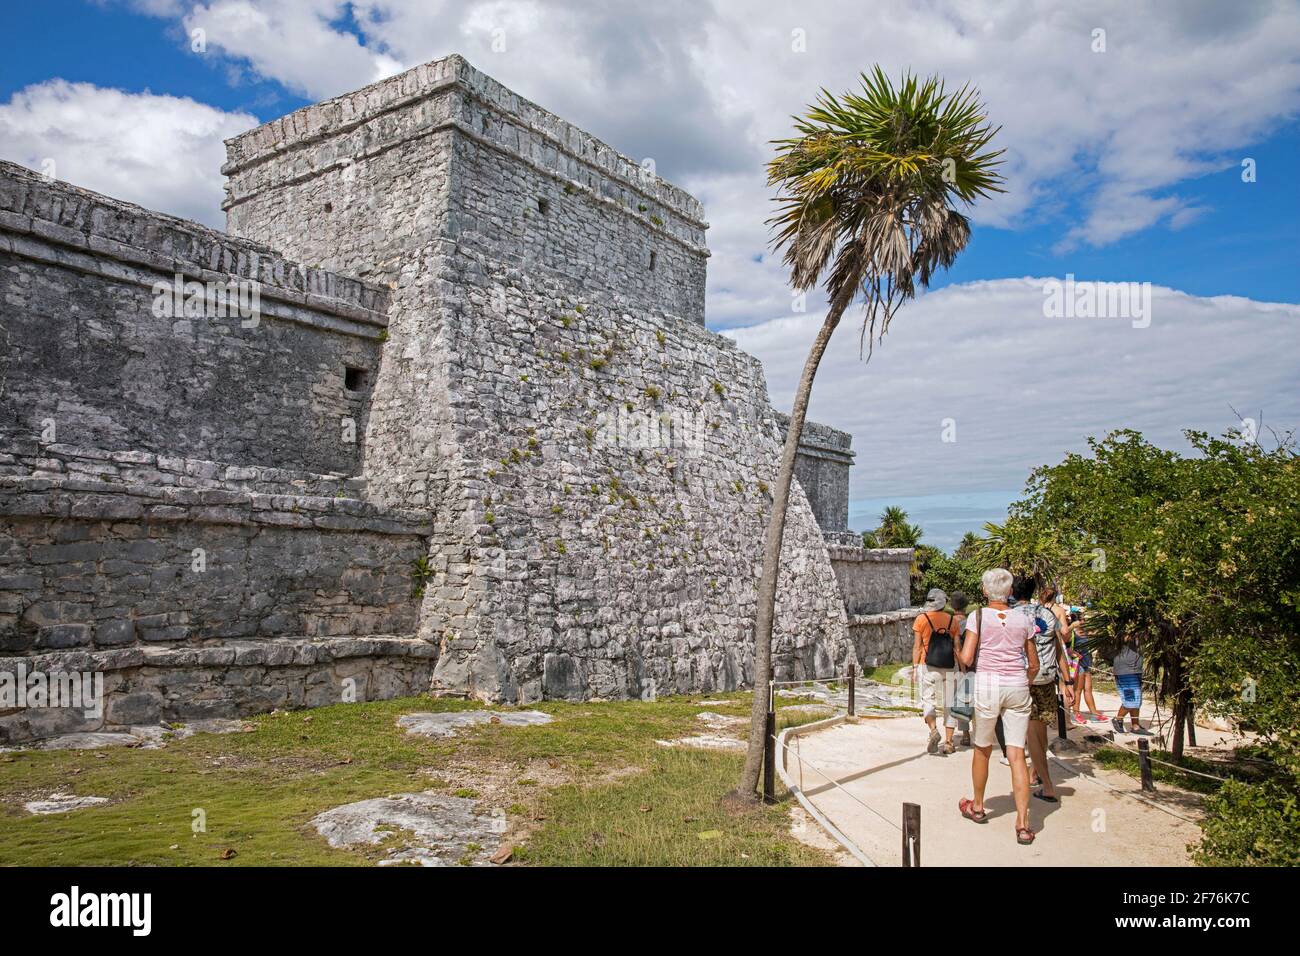 Touristes visitant les ruines mayas anciennes et Pyramid El Castillo à Tulum, ville fortifiée maya pré-colombienne, Quintana Roo, péninsule de Yucatán, Mexique Banque D'Images